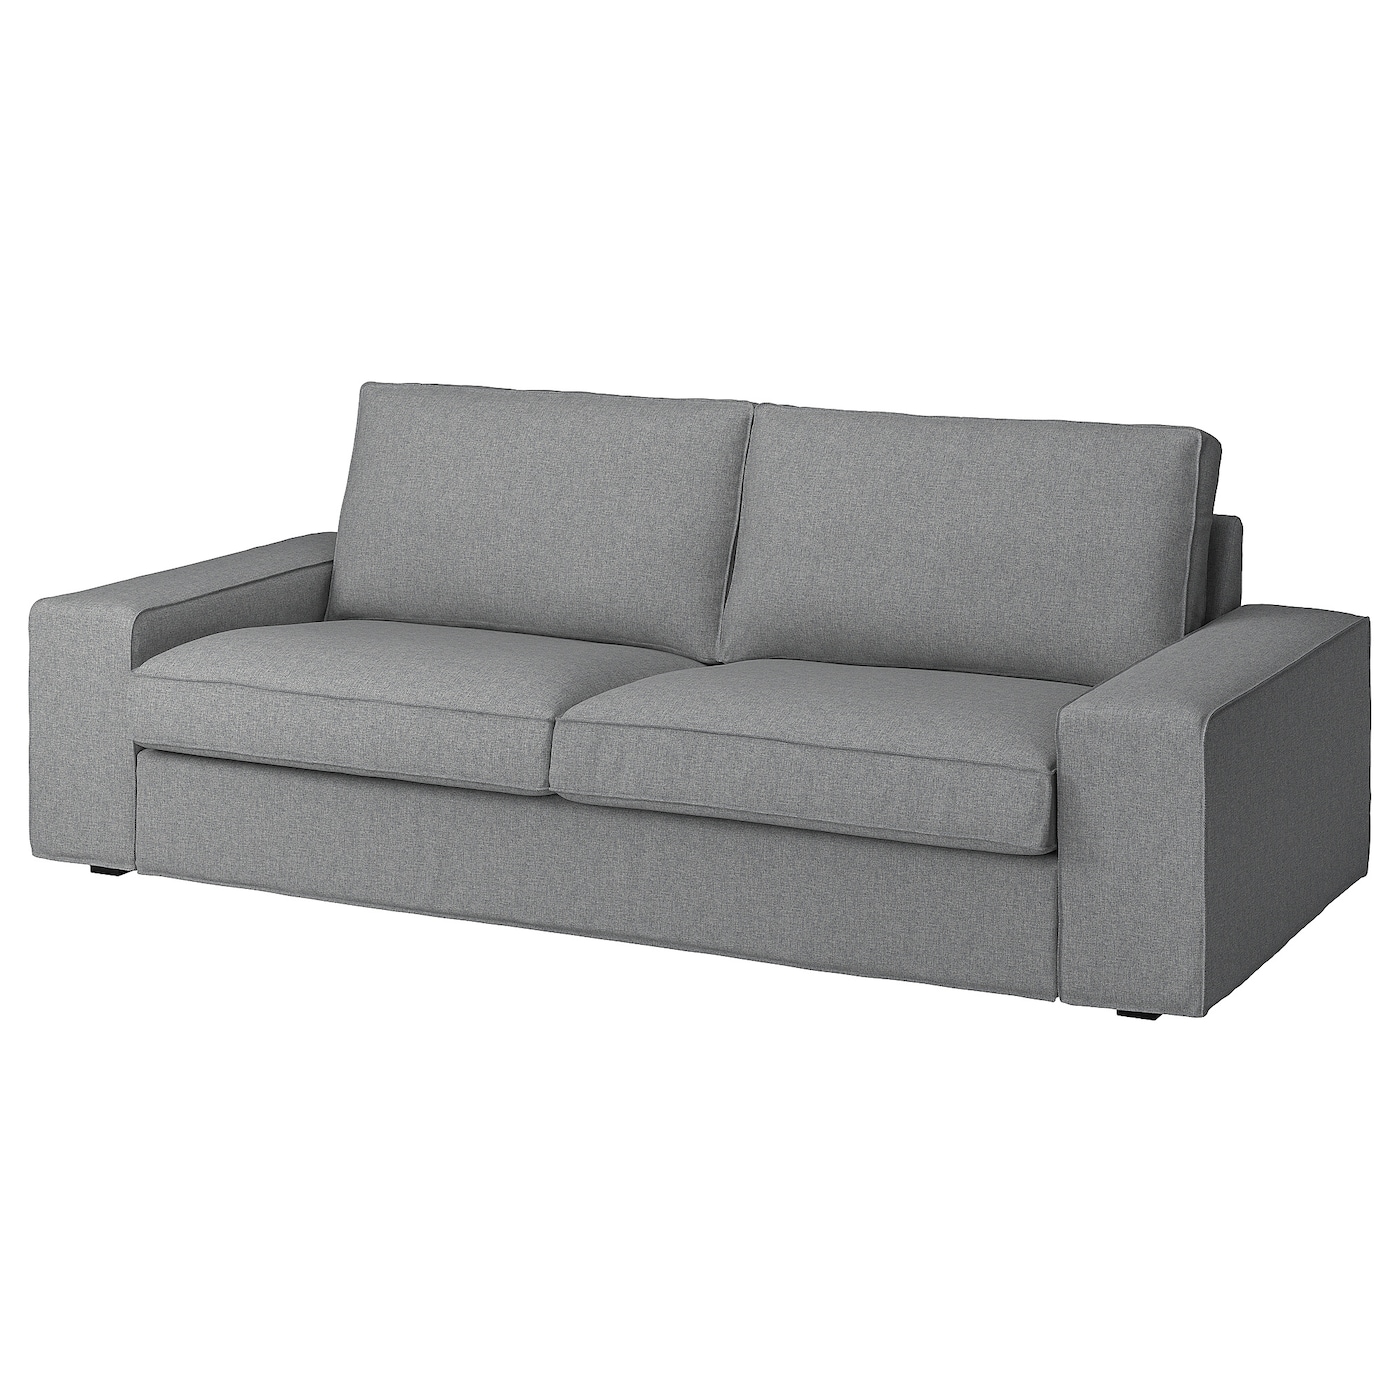 3-местный диван - IKEA KIVIK,  83x95x228см, серый, КИВИК ИКЕА